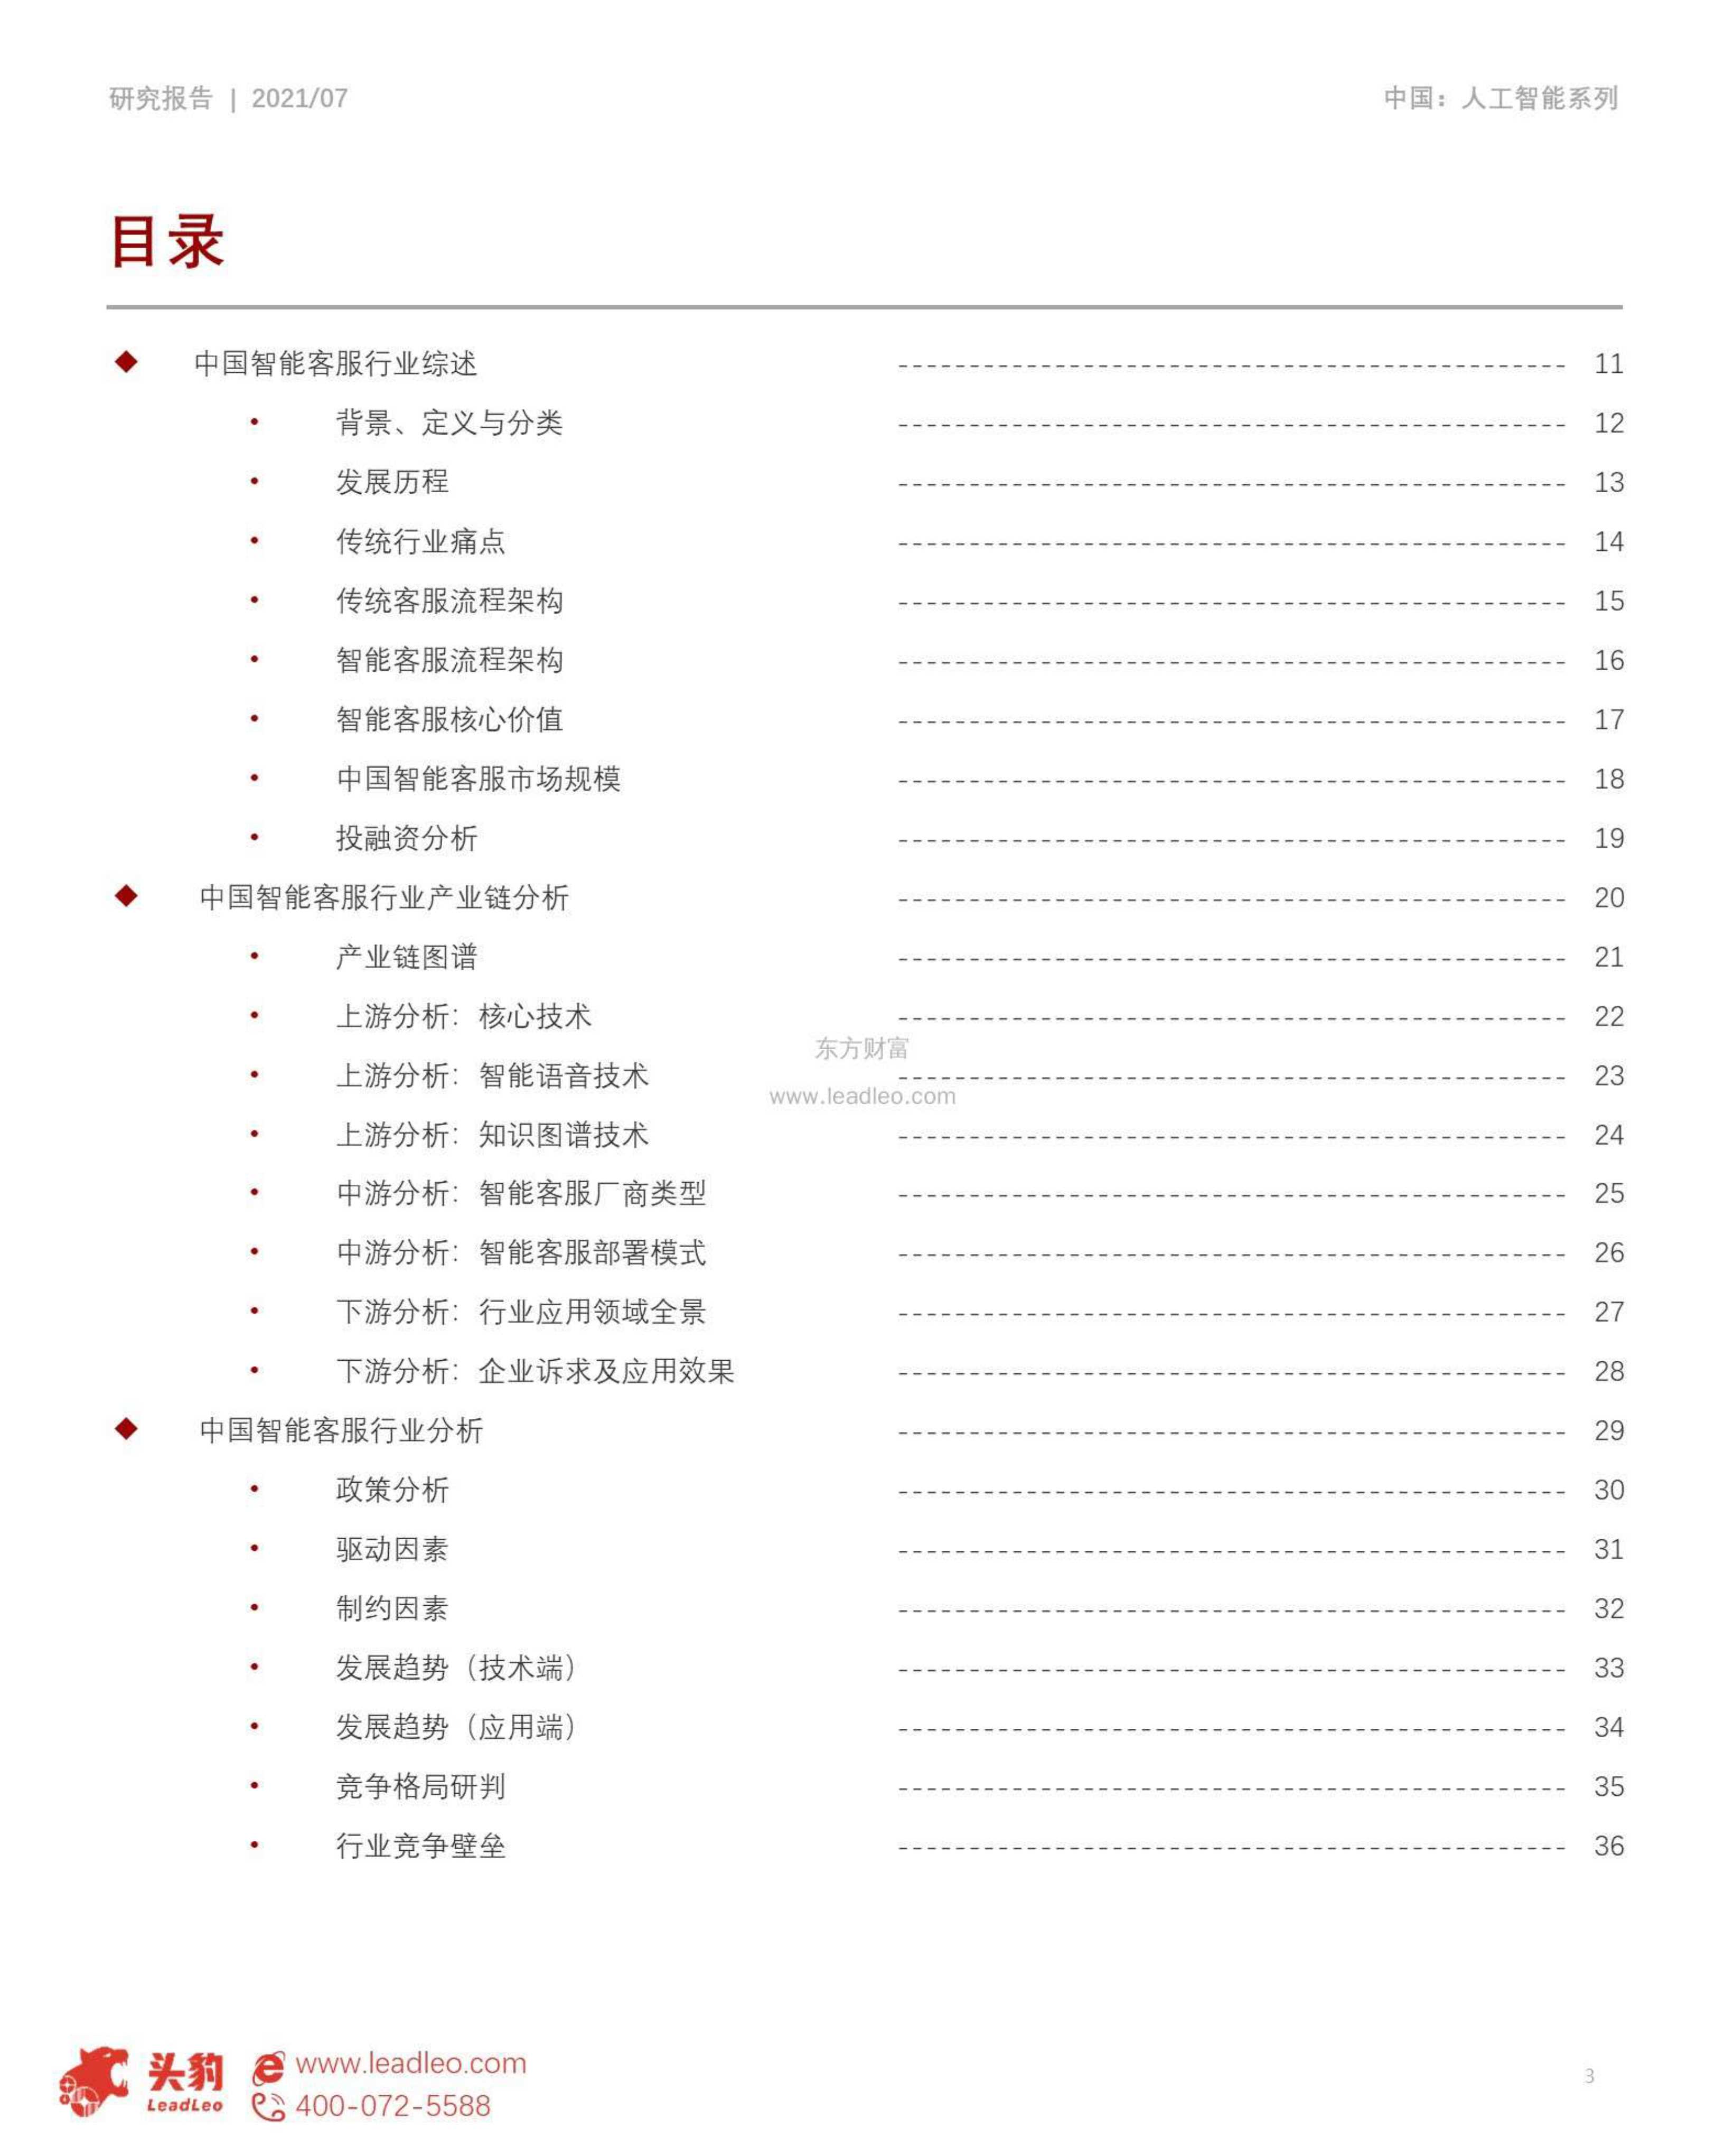 头豹研究院-2021年中国智能客服行业洞察-2021.11-55页